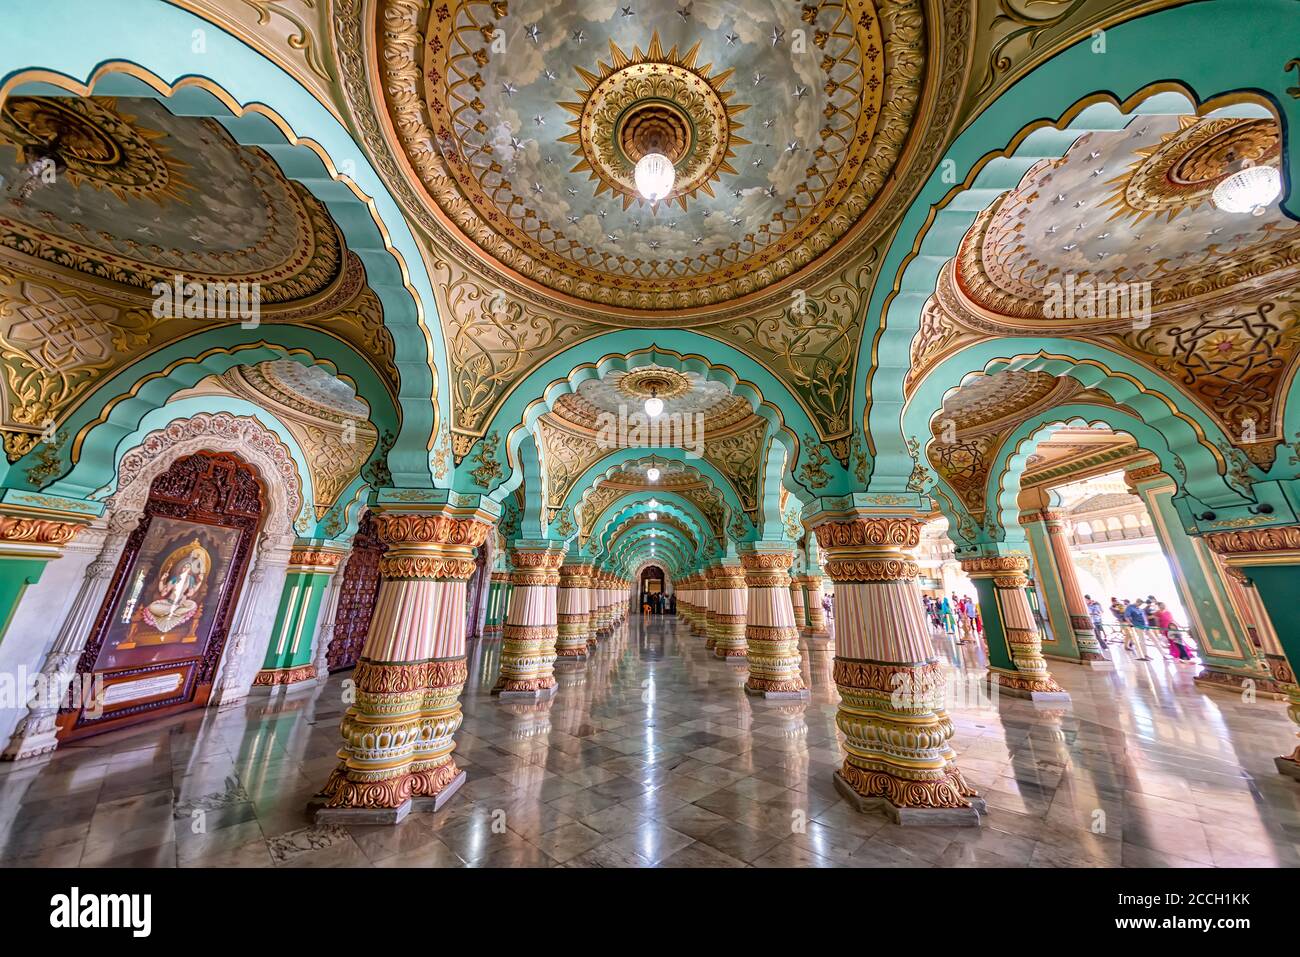 Mysore, Inde - 26 août 2018 : la salle d'audience du palais Mysore. Mysore Palace est maintenant l'une des attractions touristiques les plus célèbres en Inde Banque D'Images